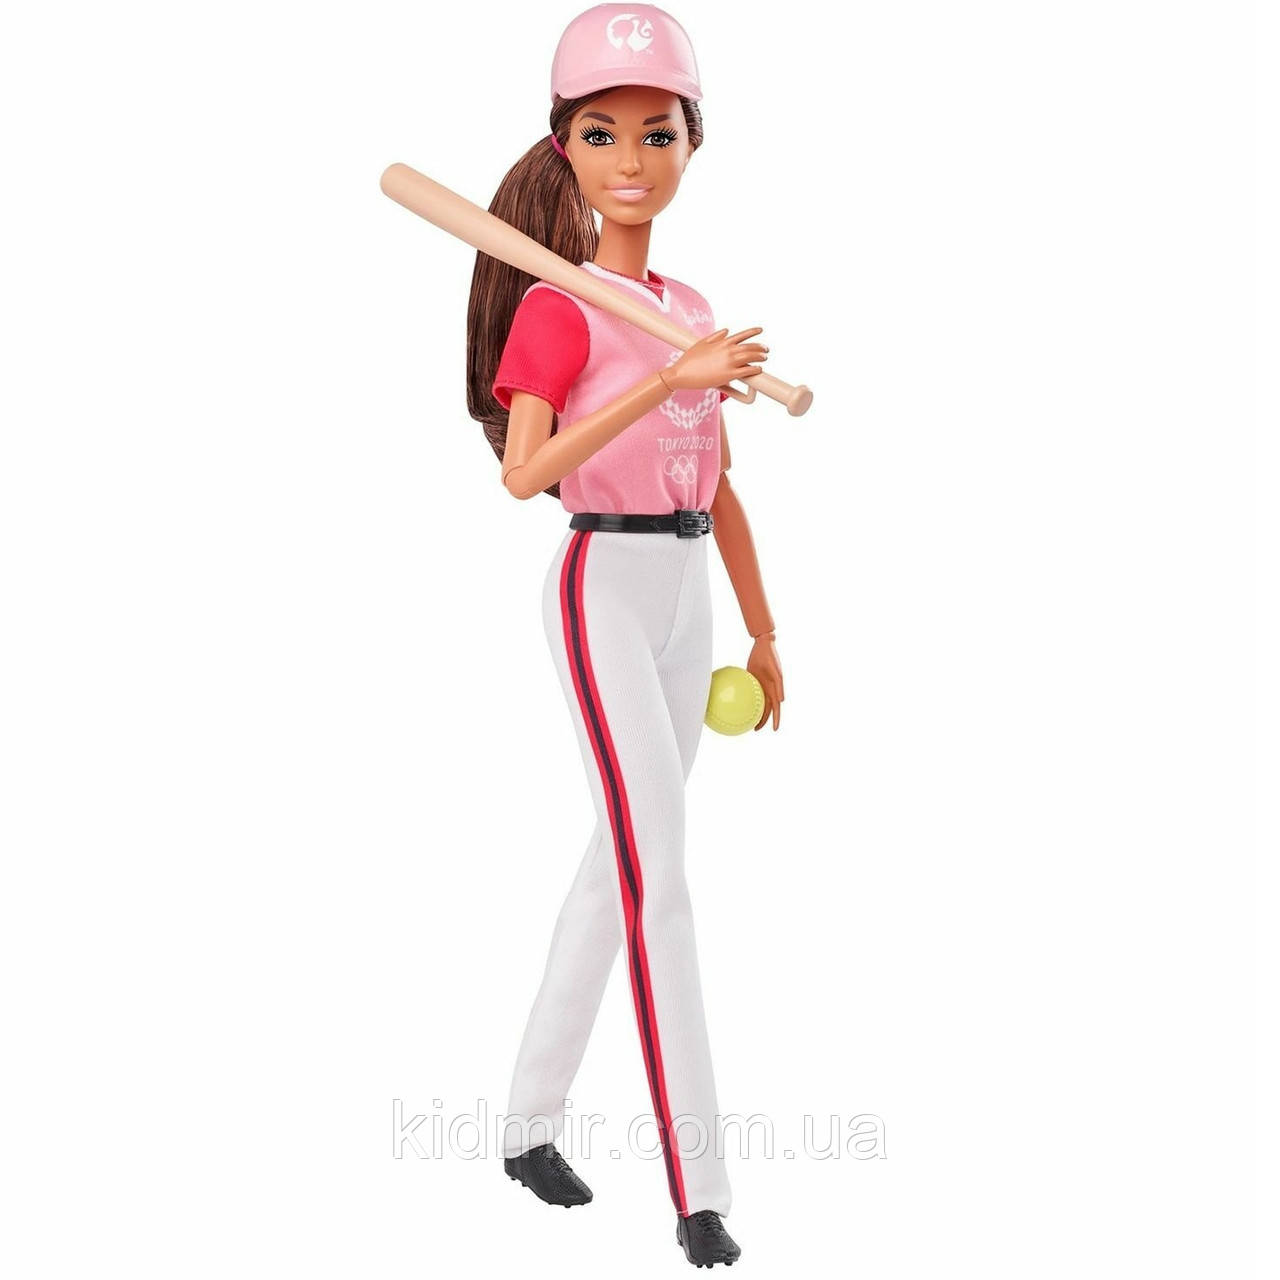 Лялька Барбі Олімпійські ігри Токіо Софтбол Barbie Olympic Games Tokyo 2020 GJL77